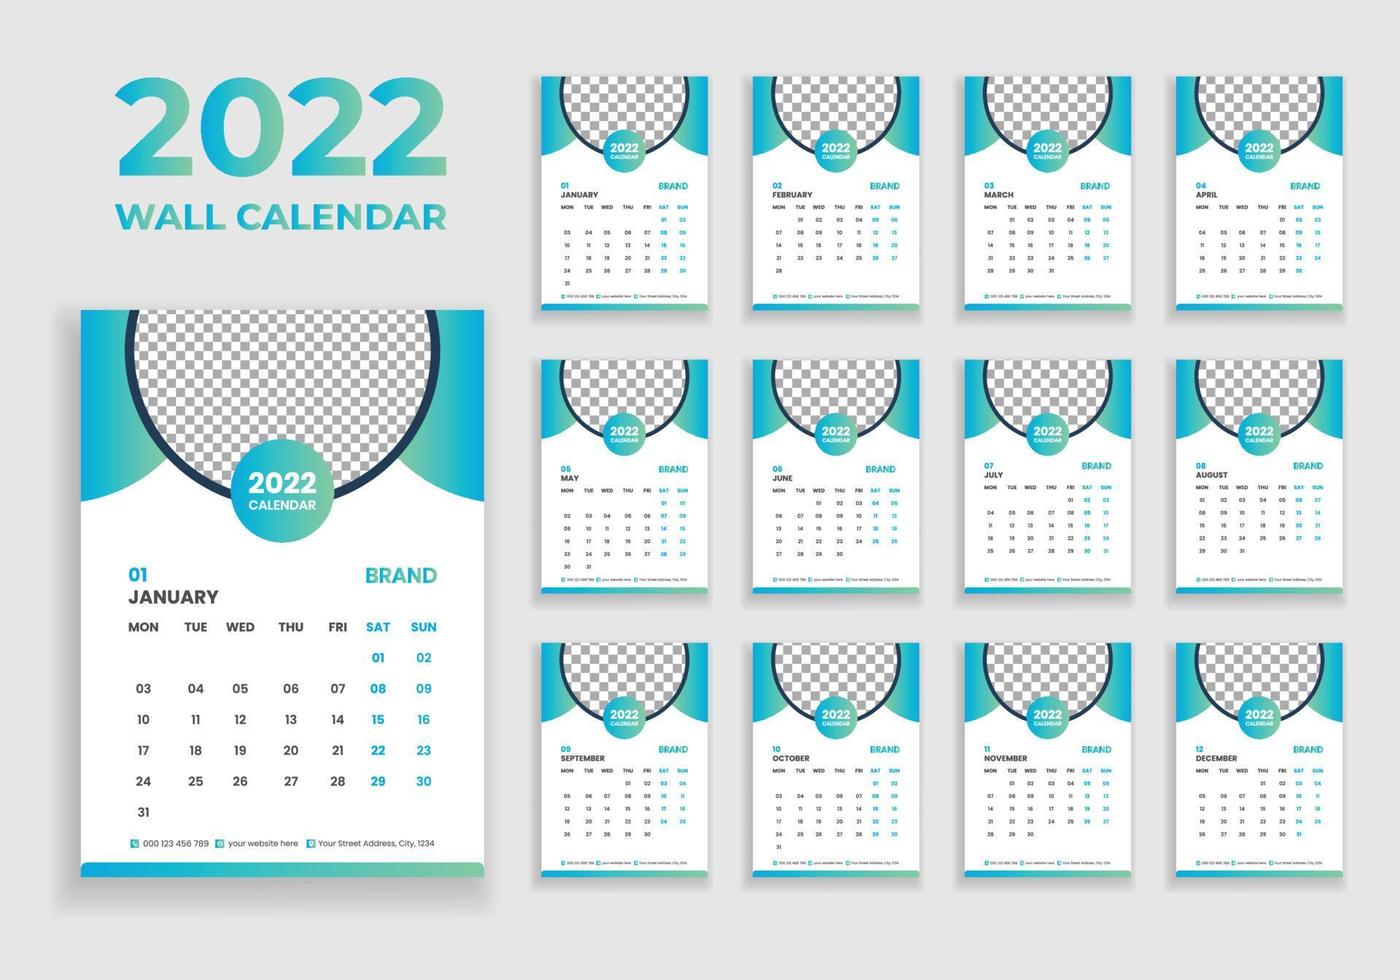 diseño de calendario de pared 2022. diseño de calendario de pared 2022. diseño de calendario de año nuevo 2022. la semana comienza el lunes. plantilla para calendario anual 2022 vector